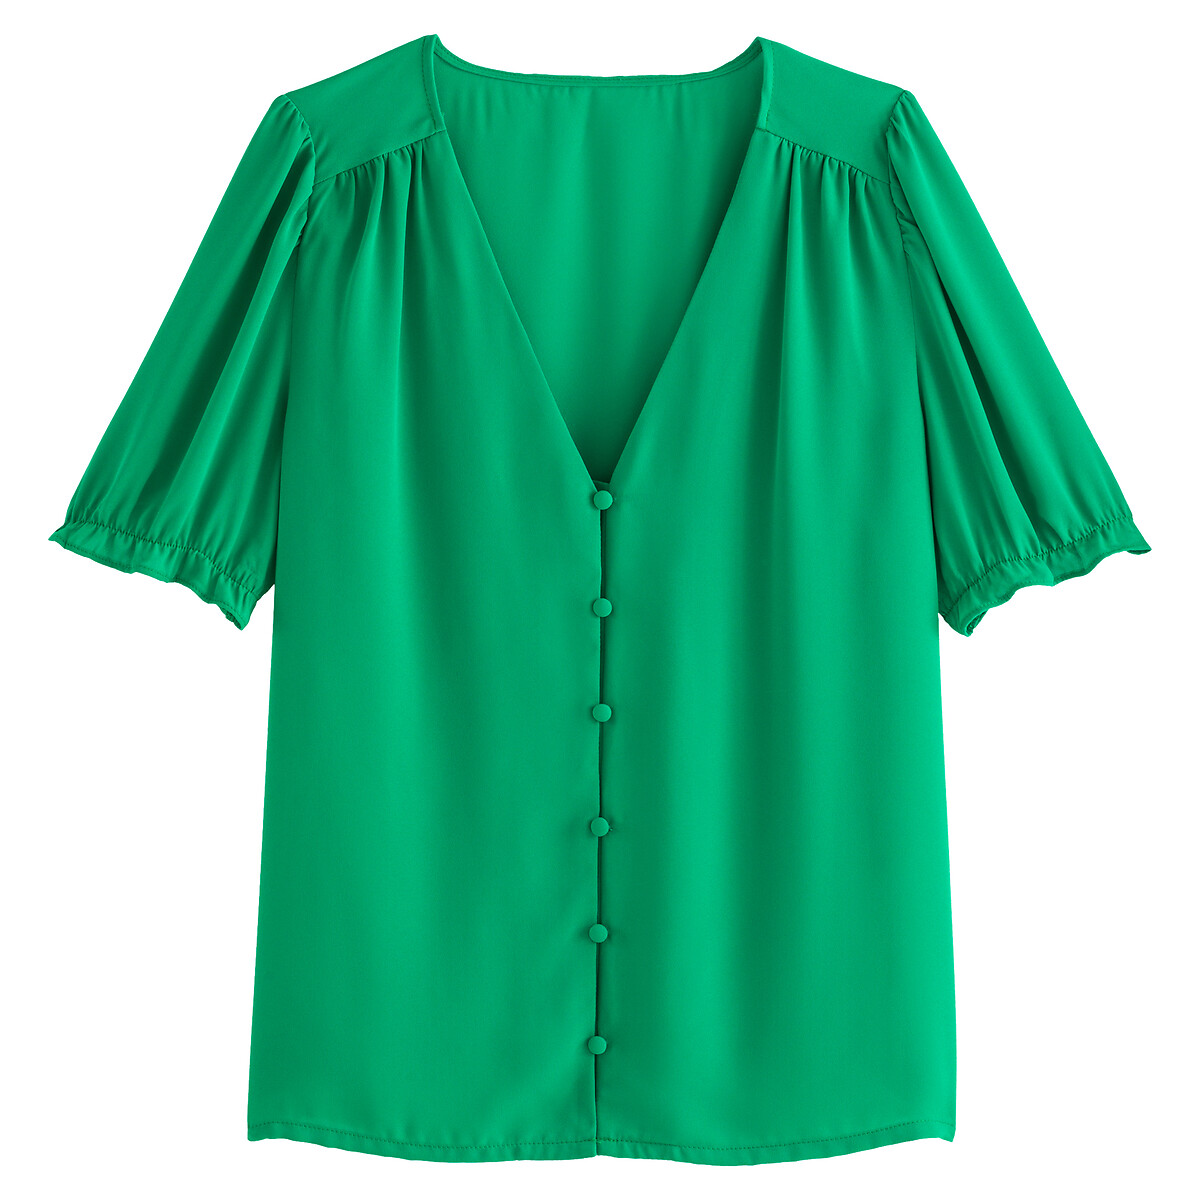 Блузка LA REDOUTE COLLECTIONS Блузка С V-образным вырезом с короткими рукавами 36 (FR) - 42 (RUS) зеленый, размер 36 (FR) - 42 (RUS) Блузка С V-образным вырезом с короткими рукавами 36 (FR) - 42 (RUS) зеленый - фото 5